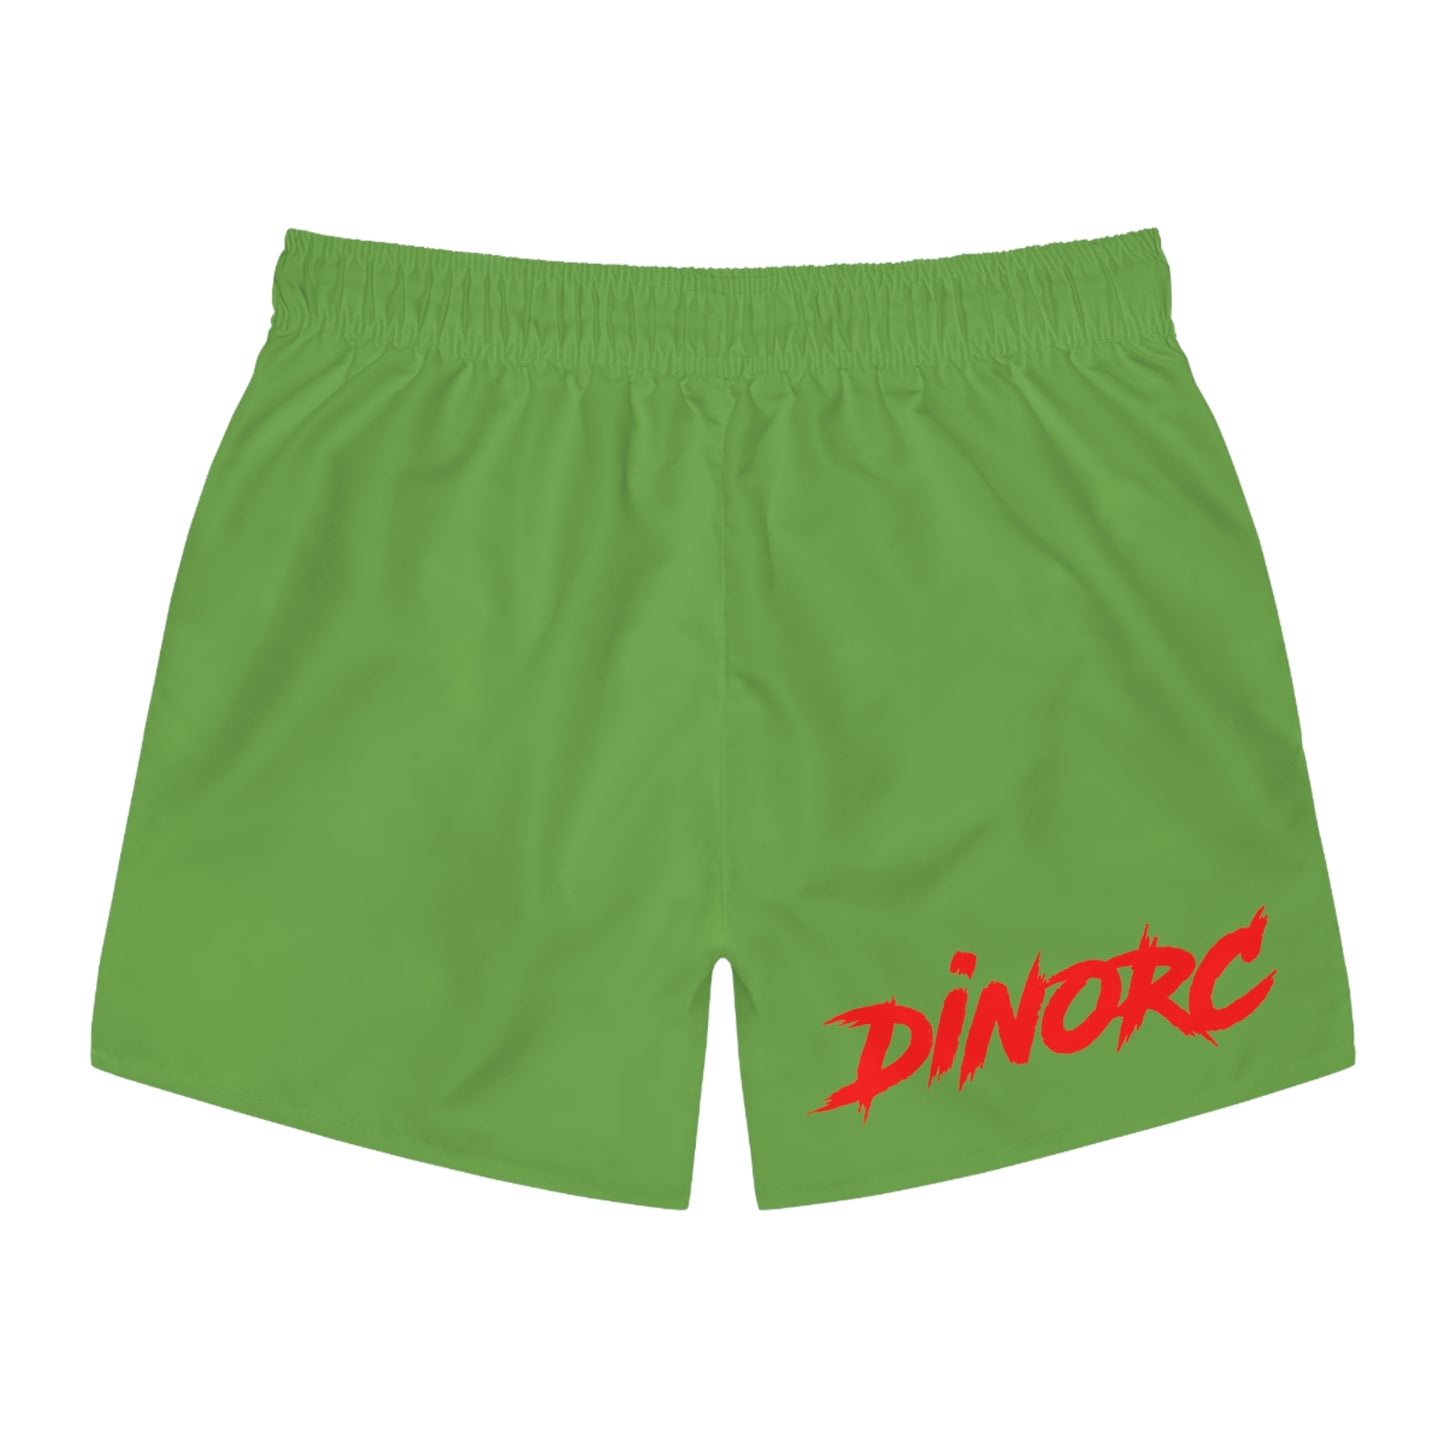 DinoRC Logo Swim Trunks